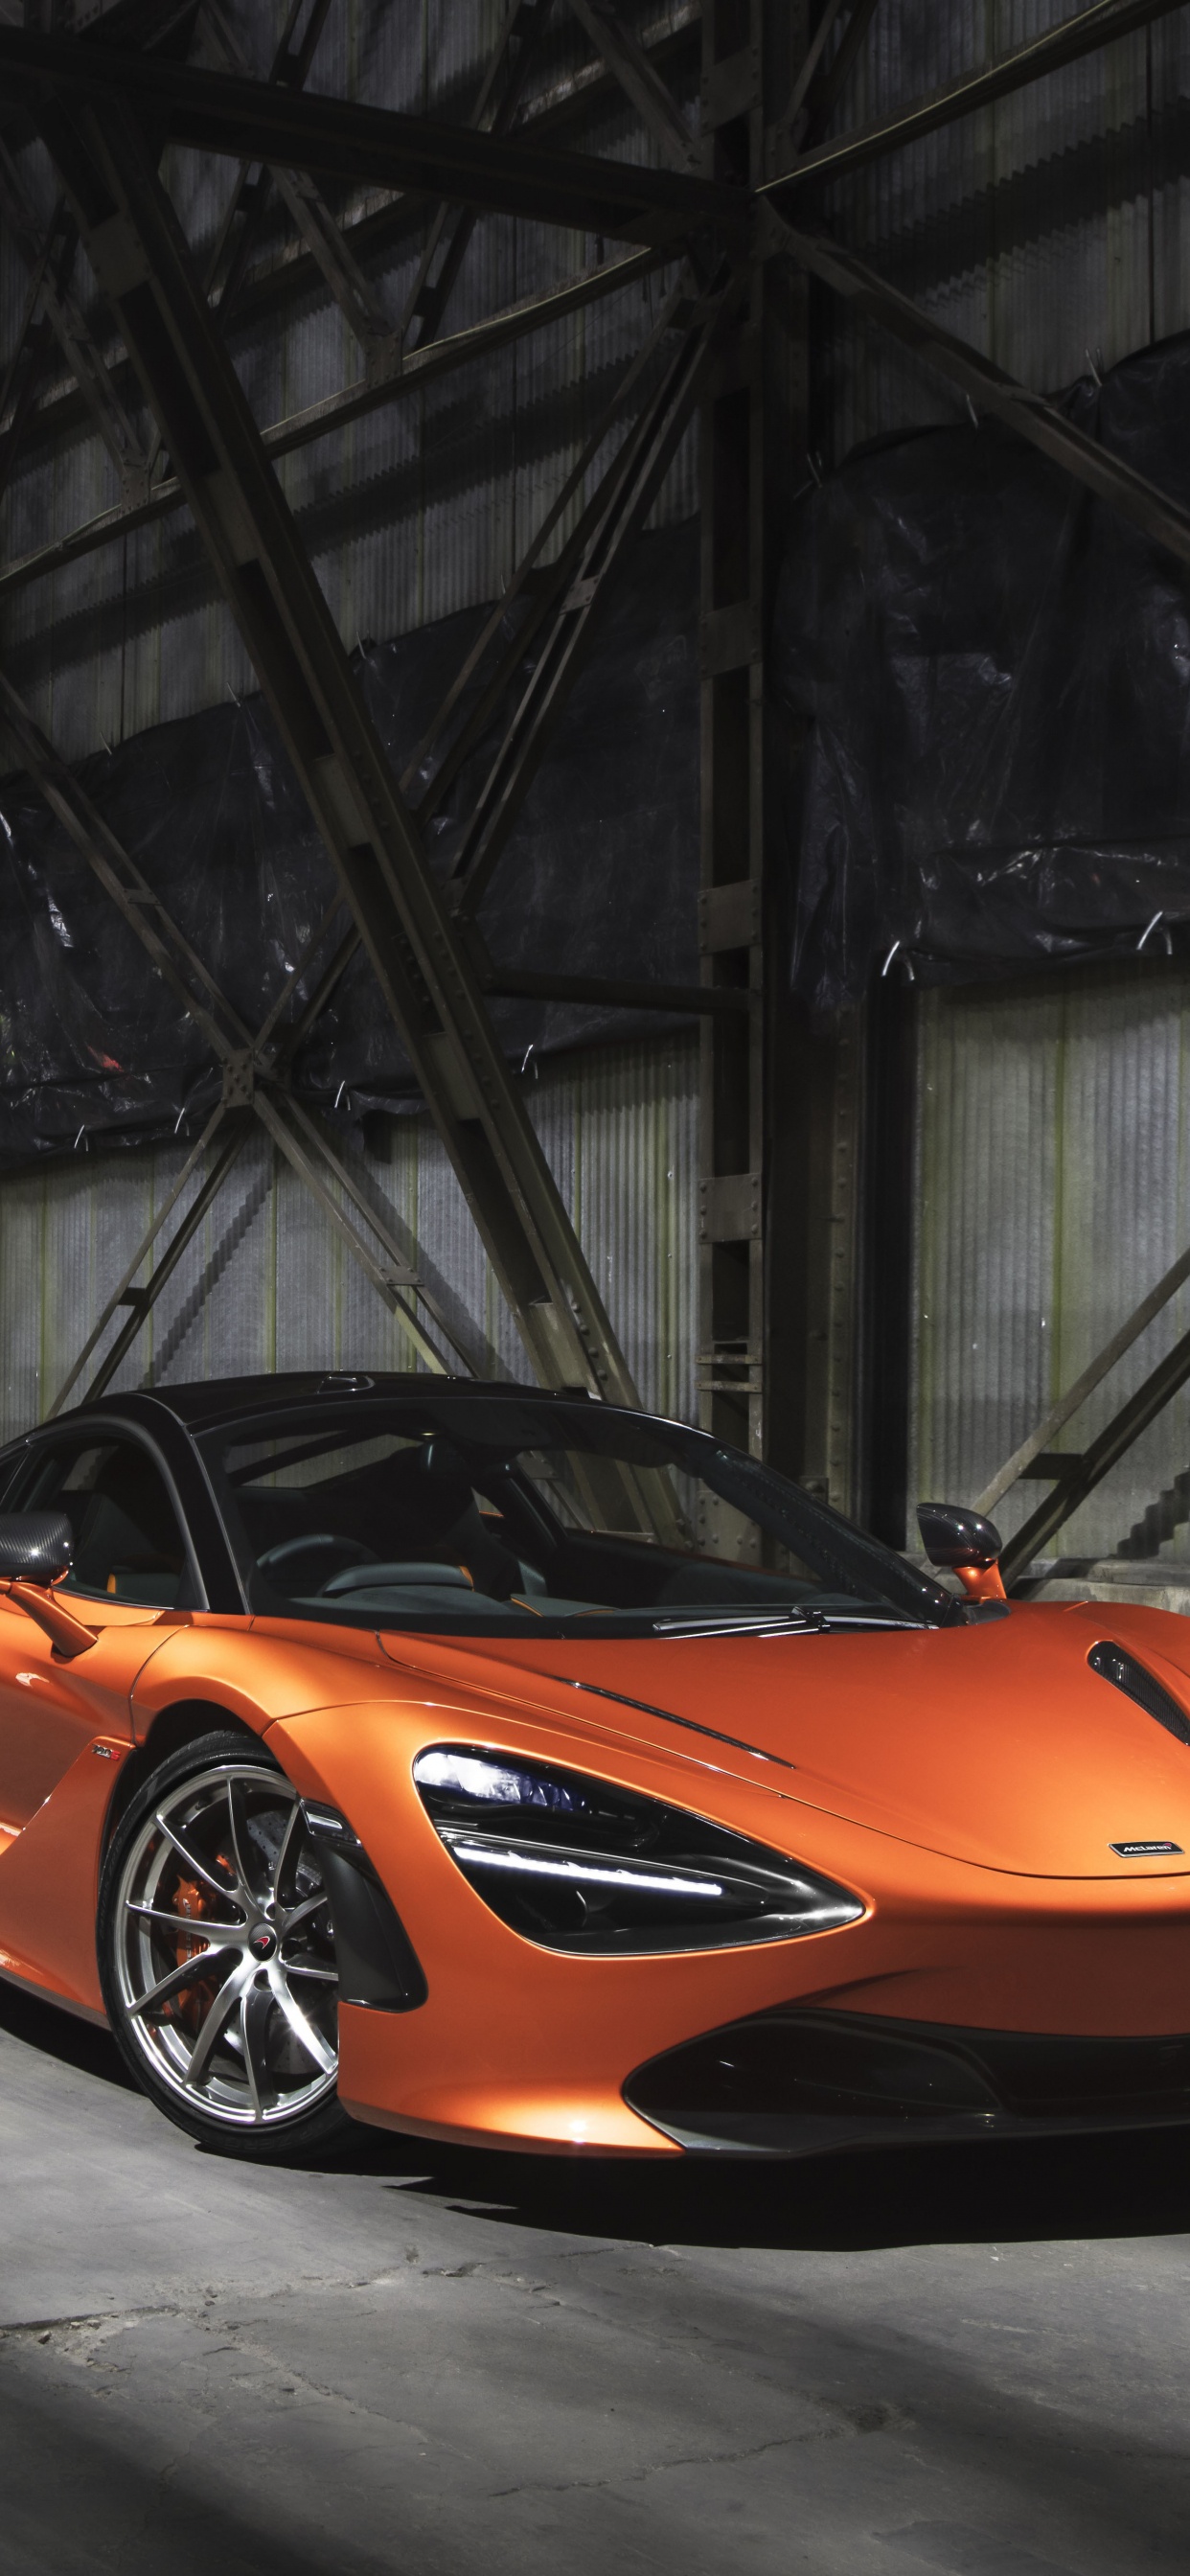 Orange Lamborghini Aventador in a Tunnel. Wallpaper in 1242x2688 Resolution